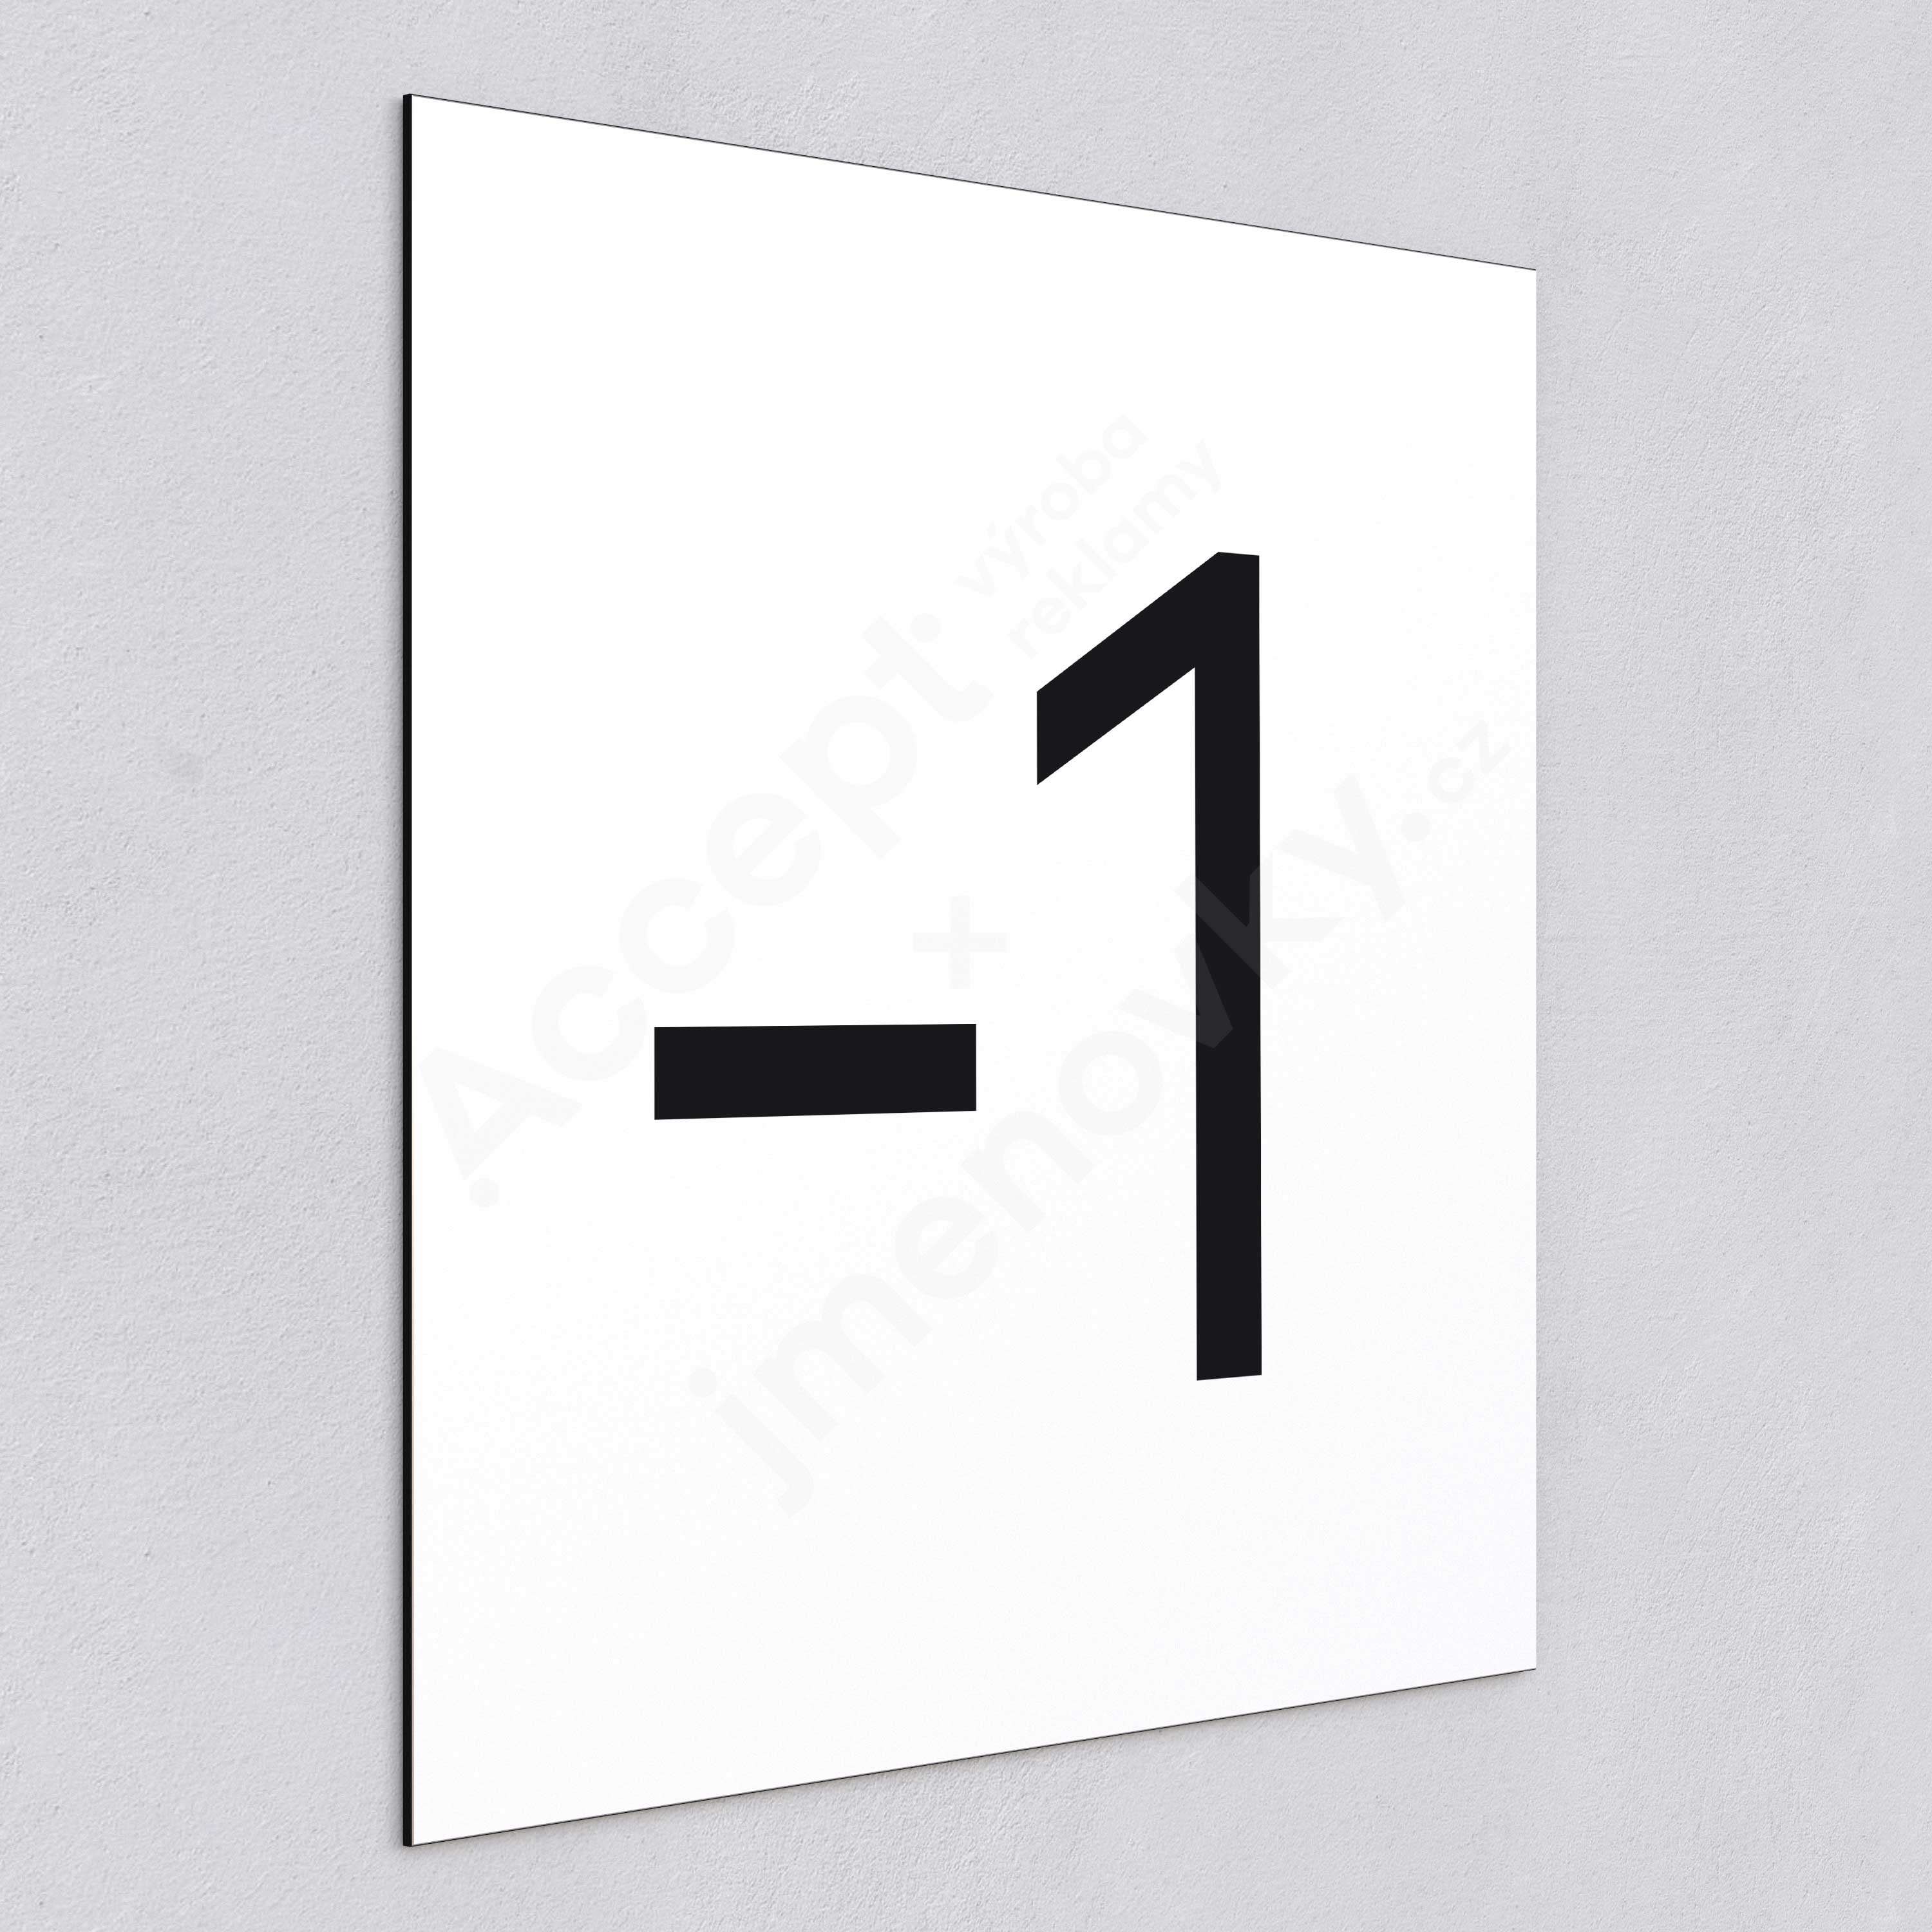 Označení podlaží - číslo "-1" - bílá tabulka - černý popis